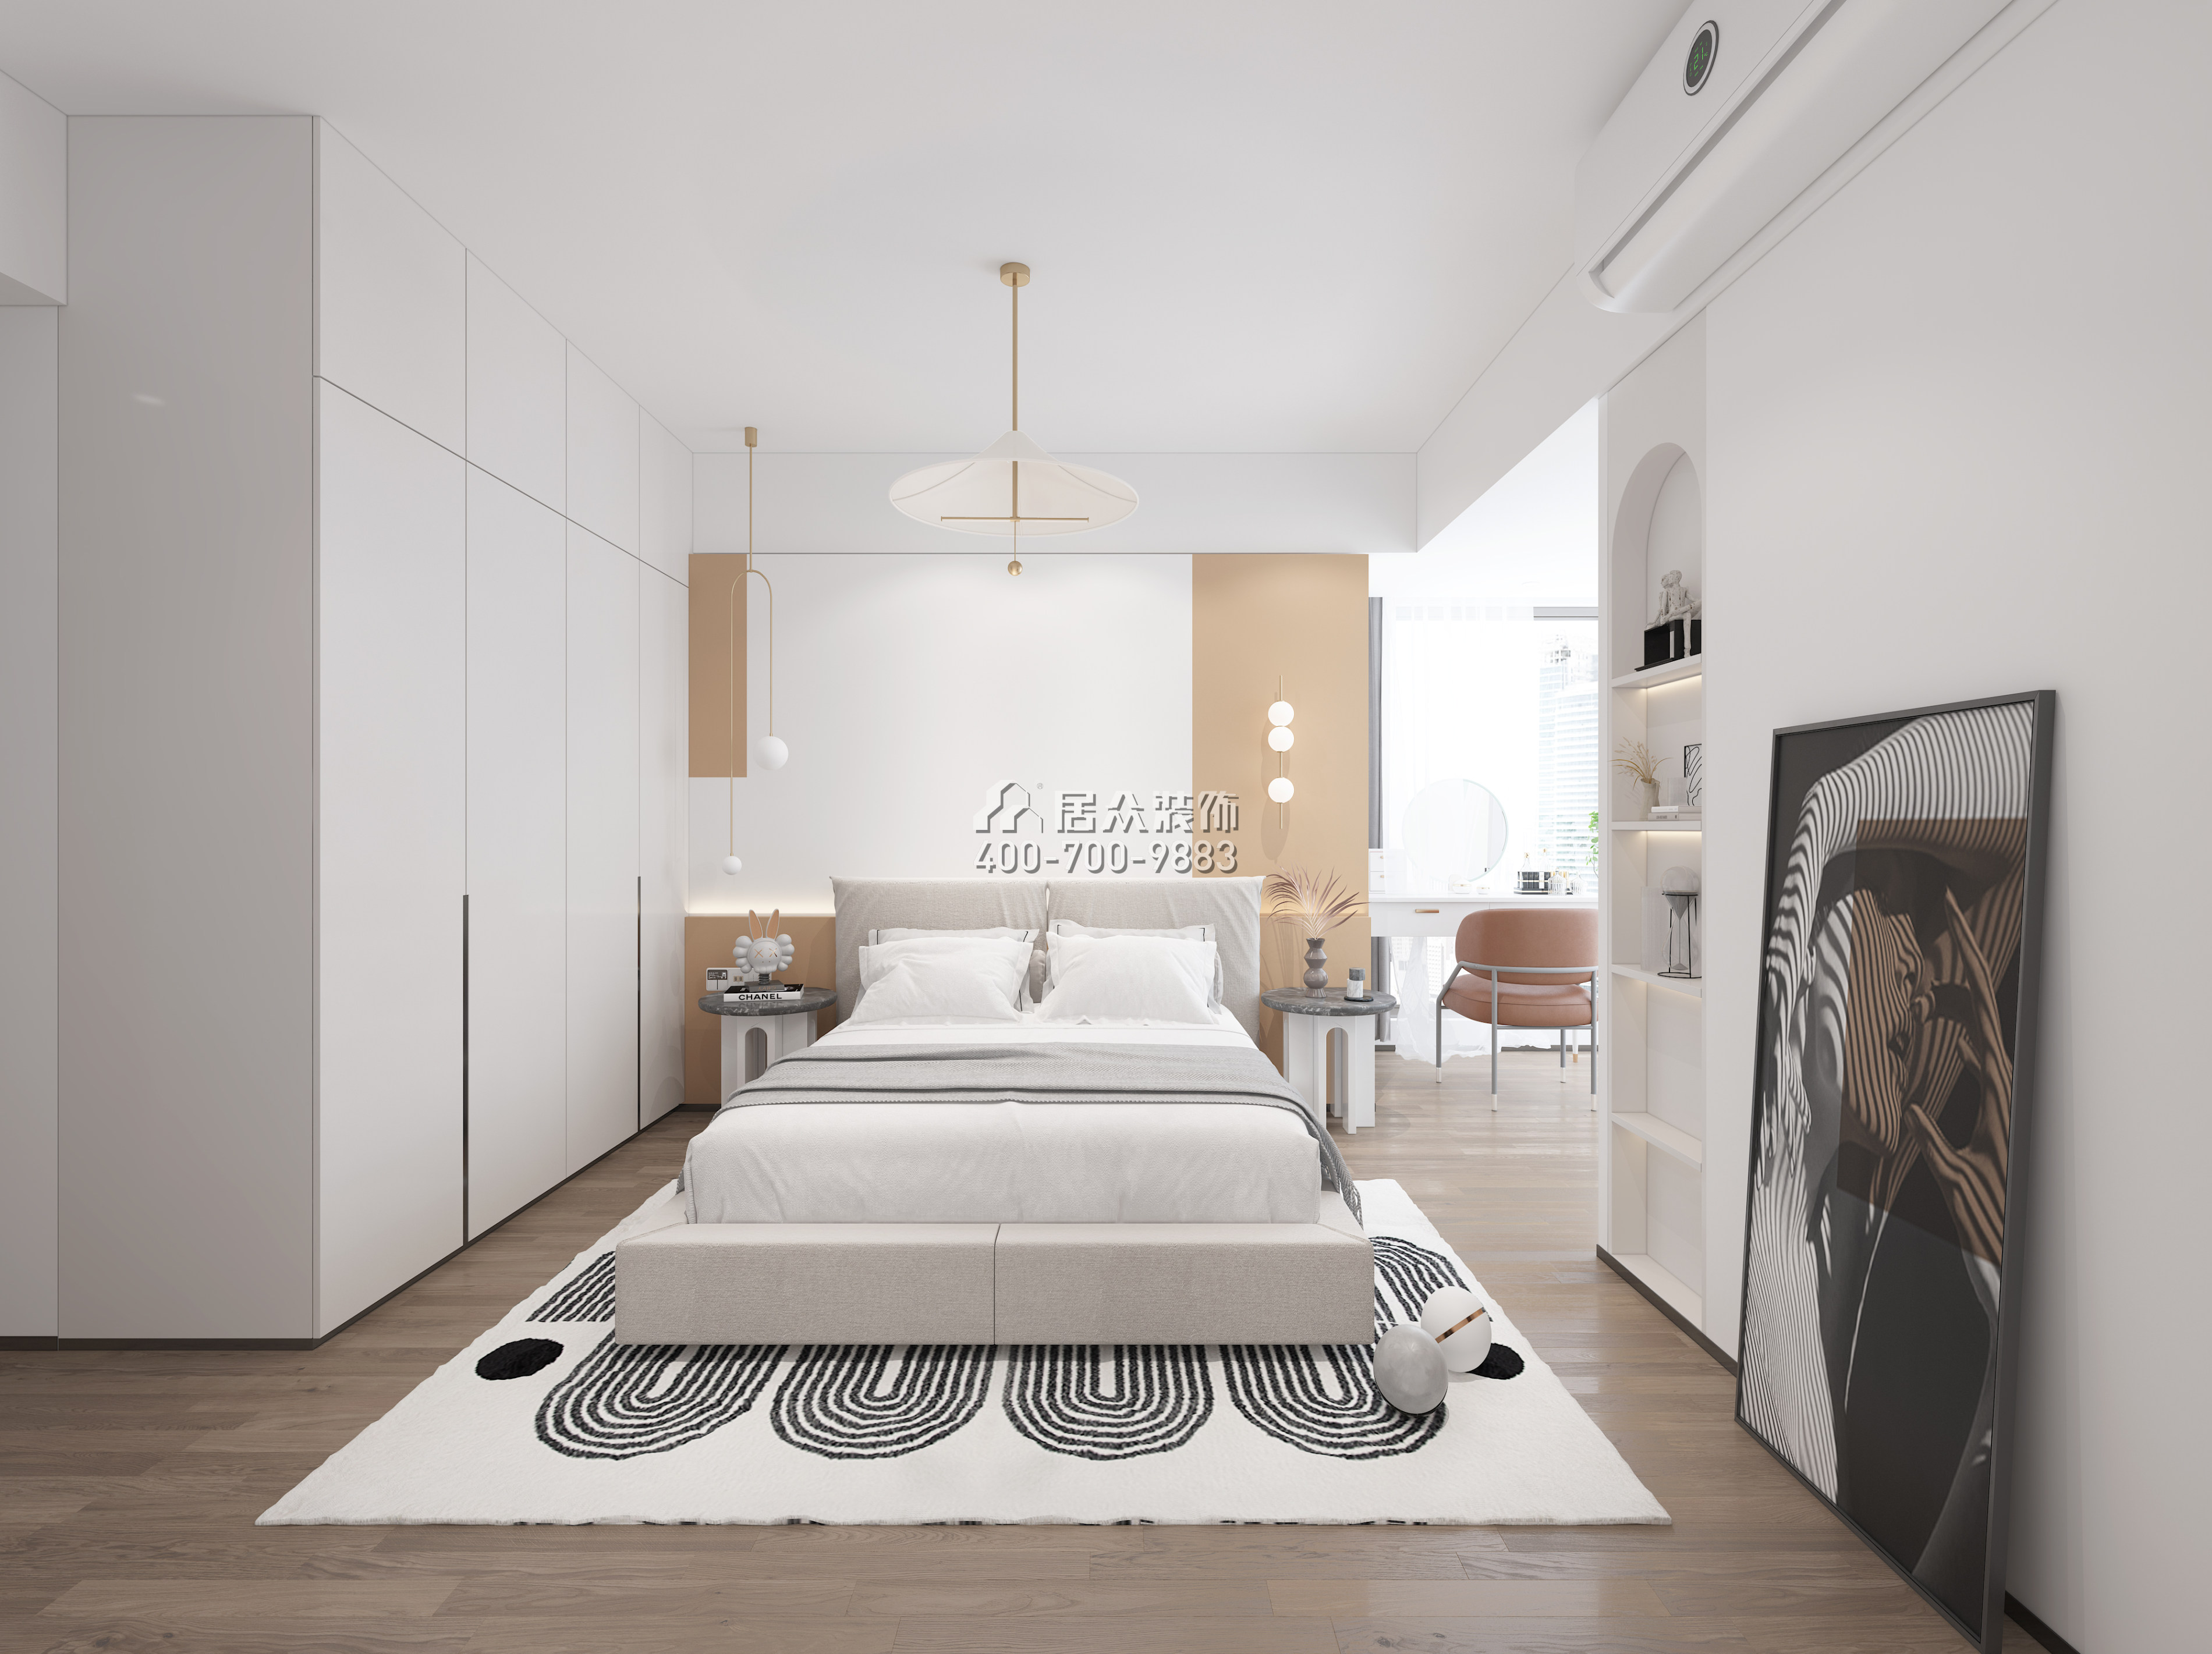 南海玫瑰園110平方米現代簡約風格平層戶型臥室裝修效果圖